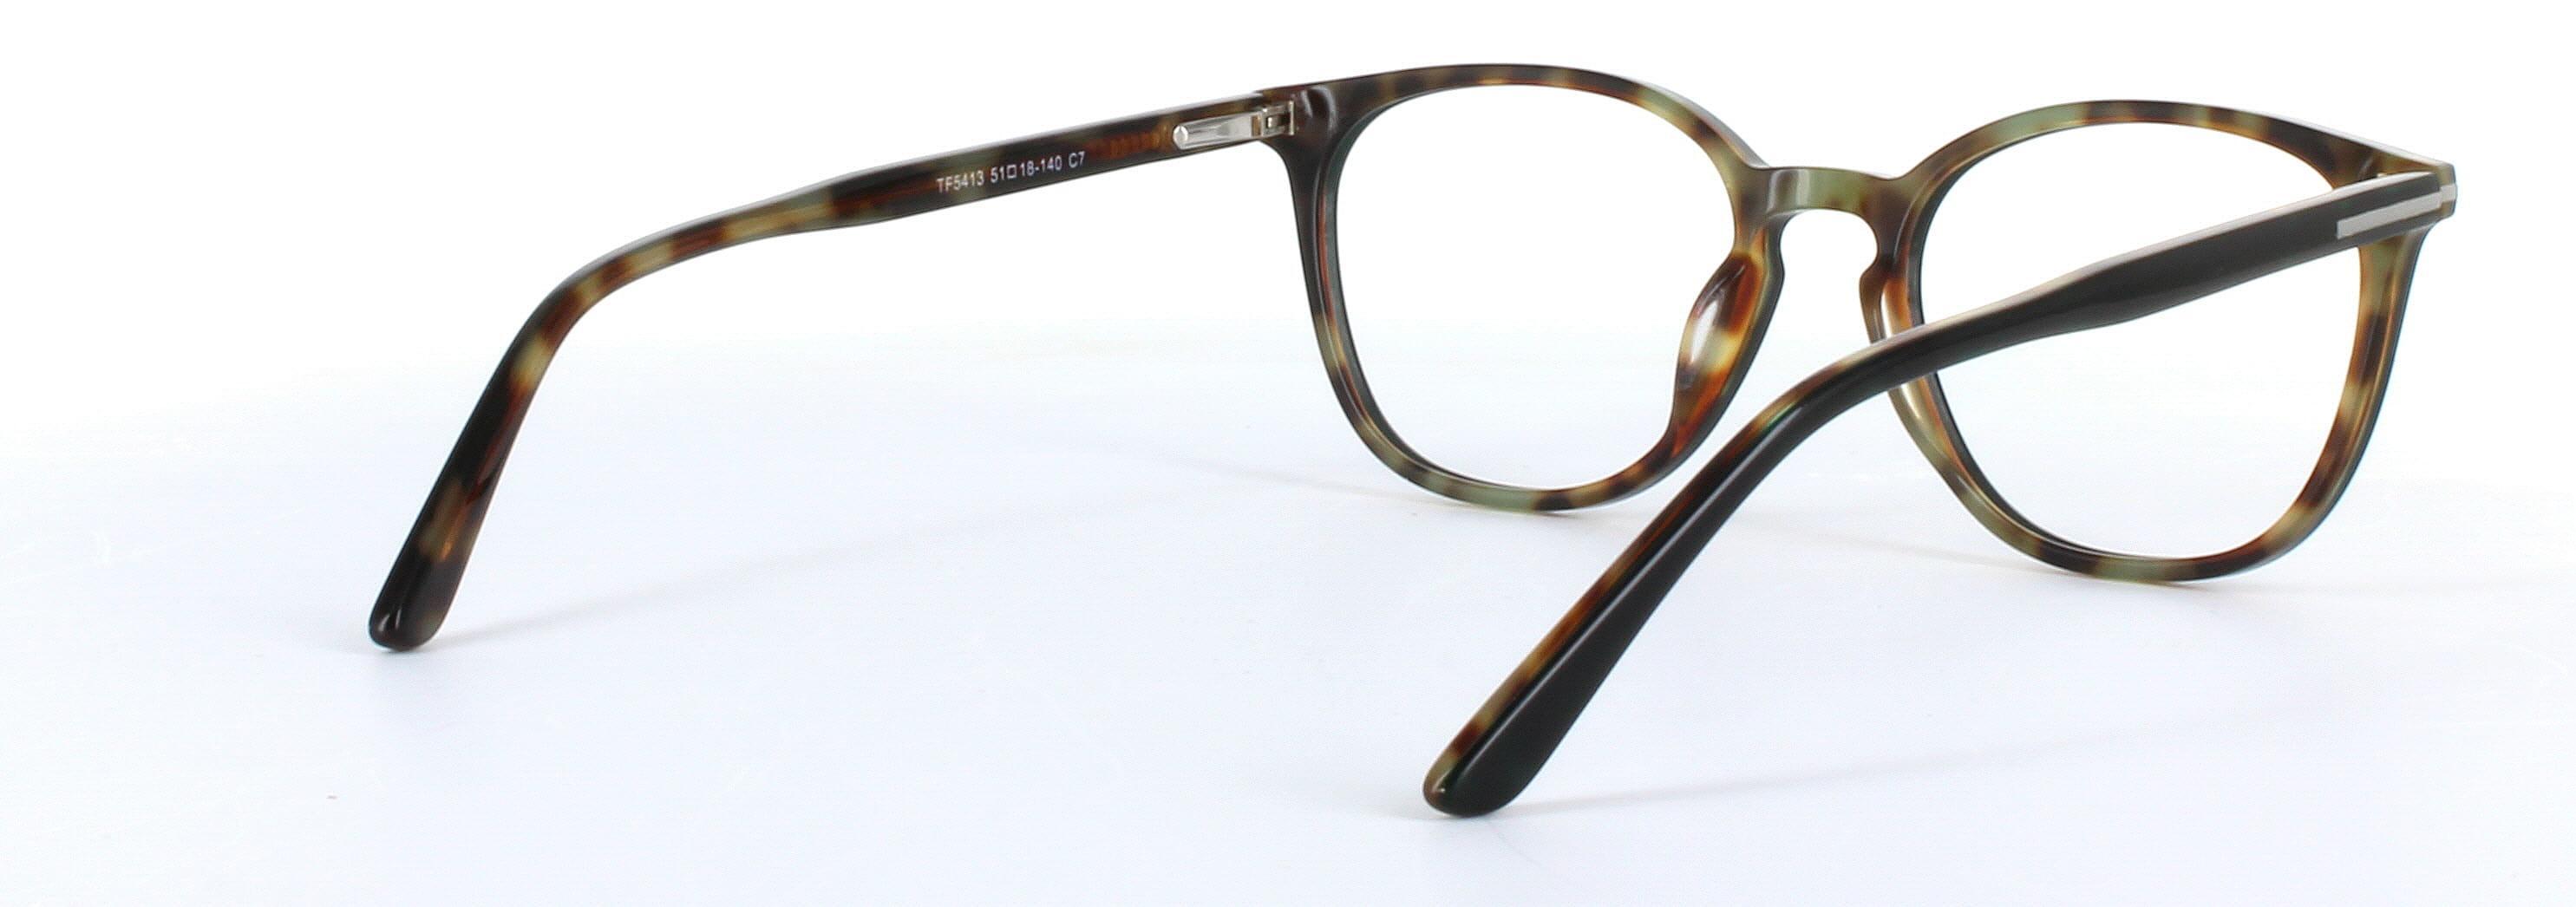 Hazar Dark Brown Full Rim Oval Acetate Glasses - Image View 4